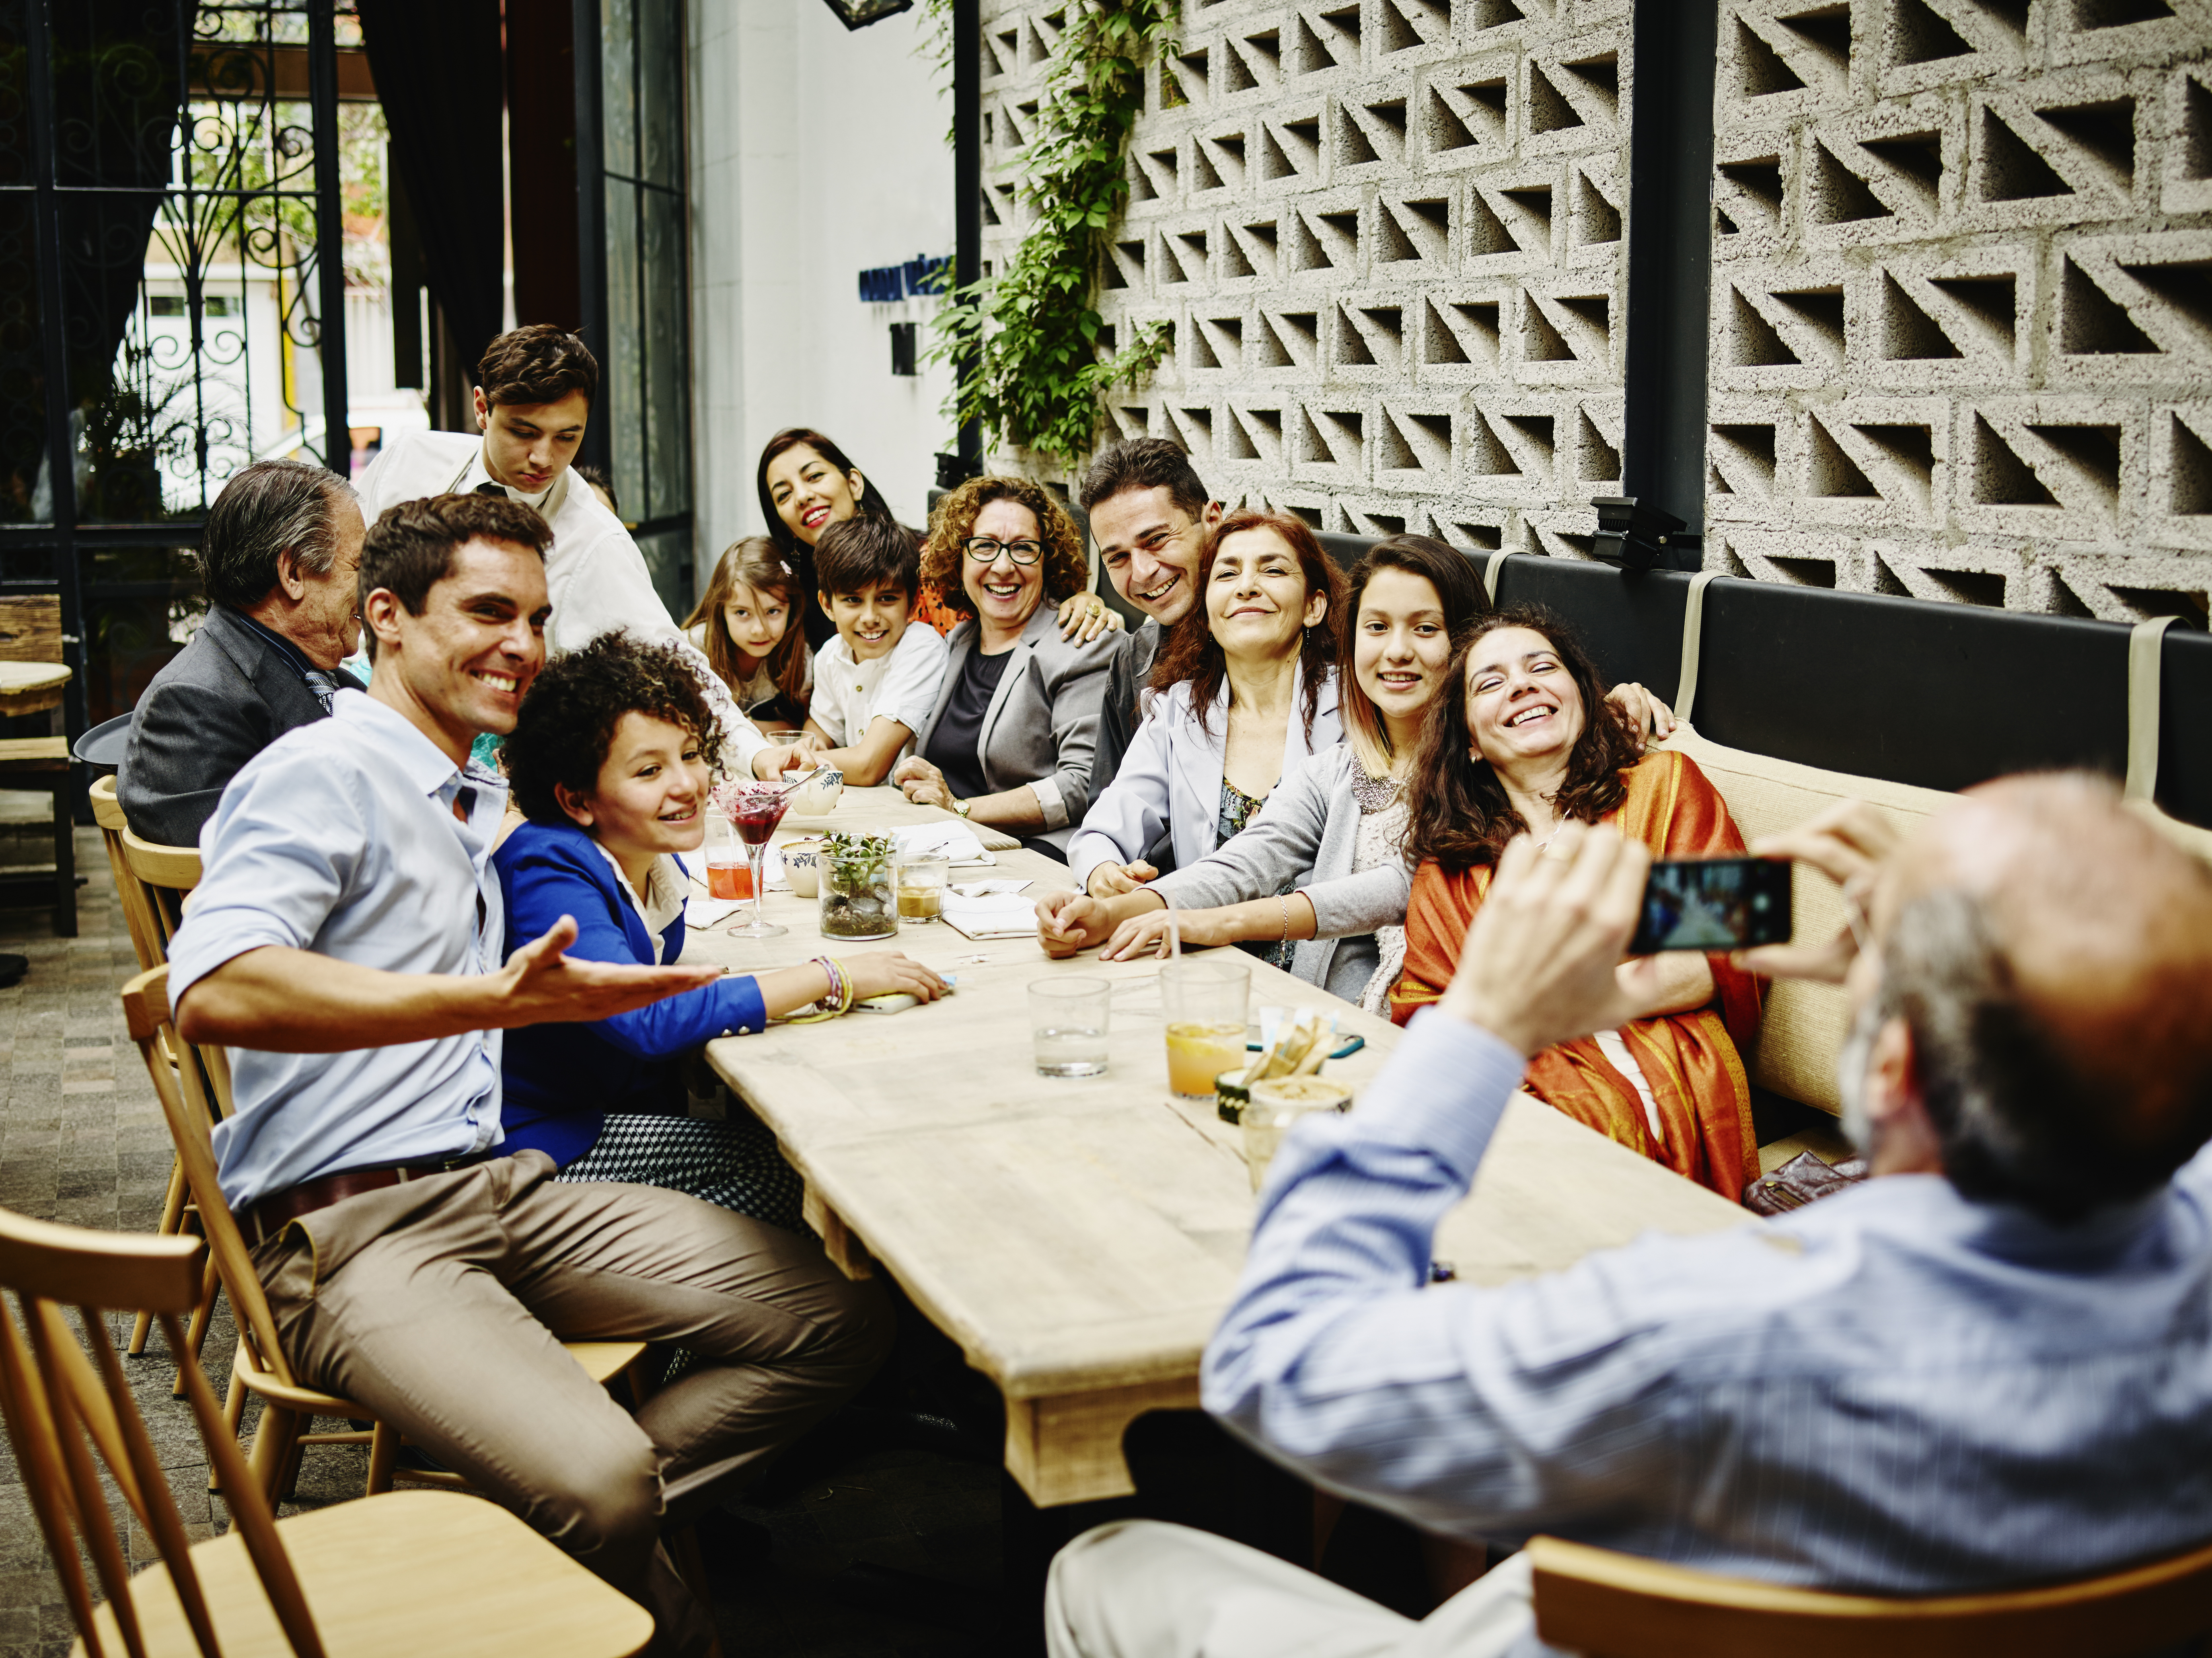 Homme prenant un portrait de famille avec son smartphone lors d'un dîner dans un restaurant | Source : Getty Images